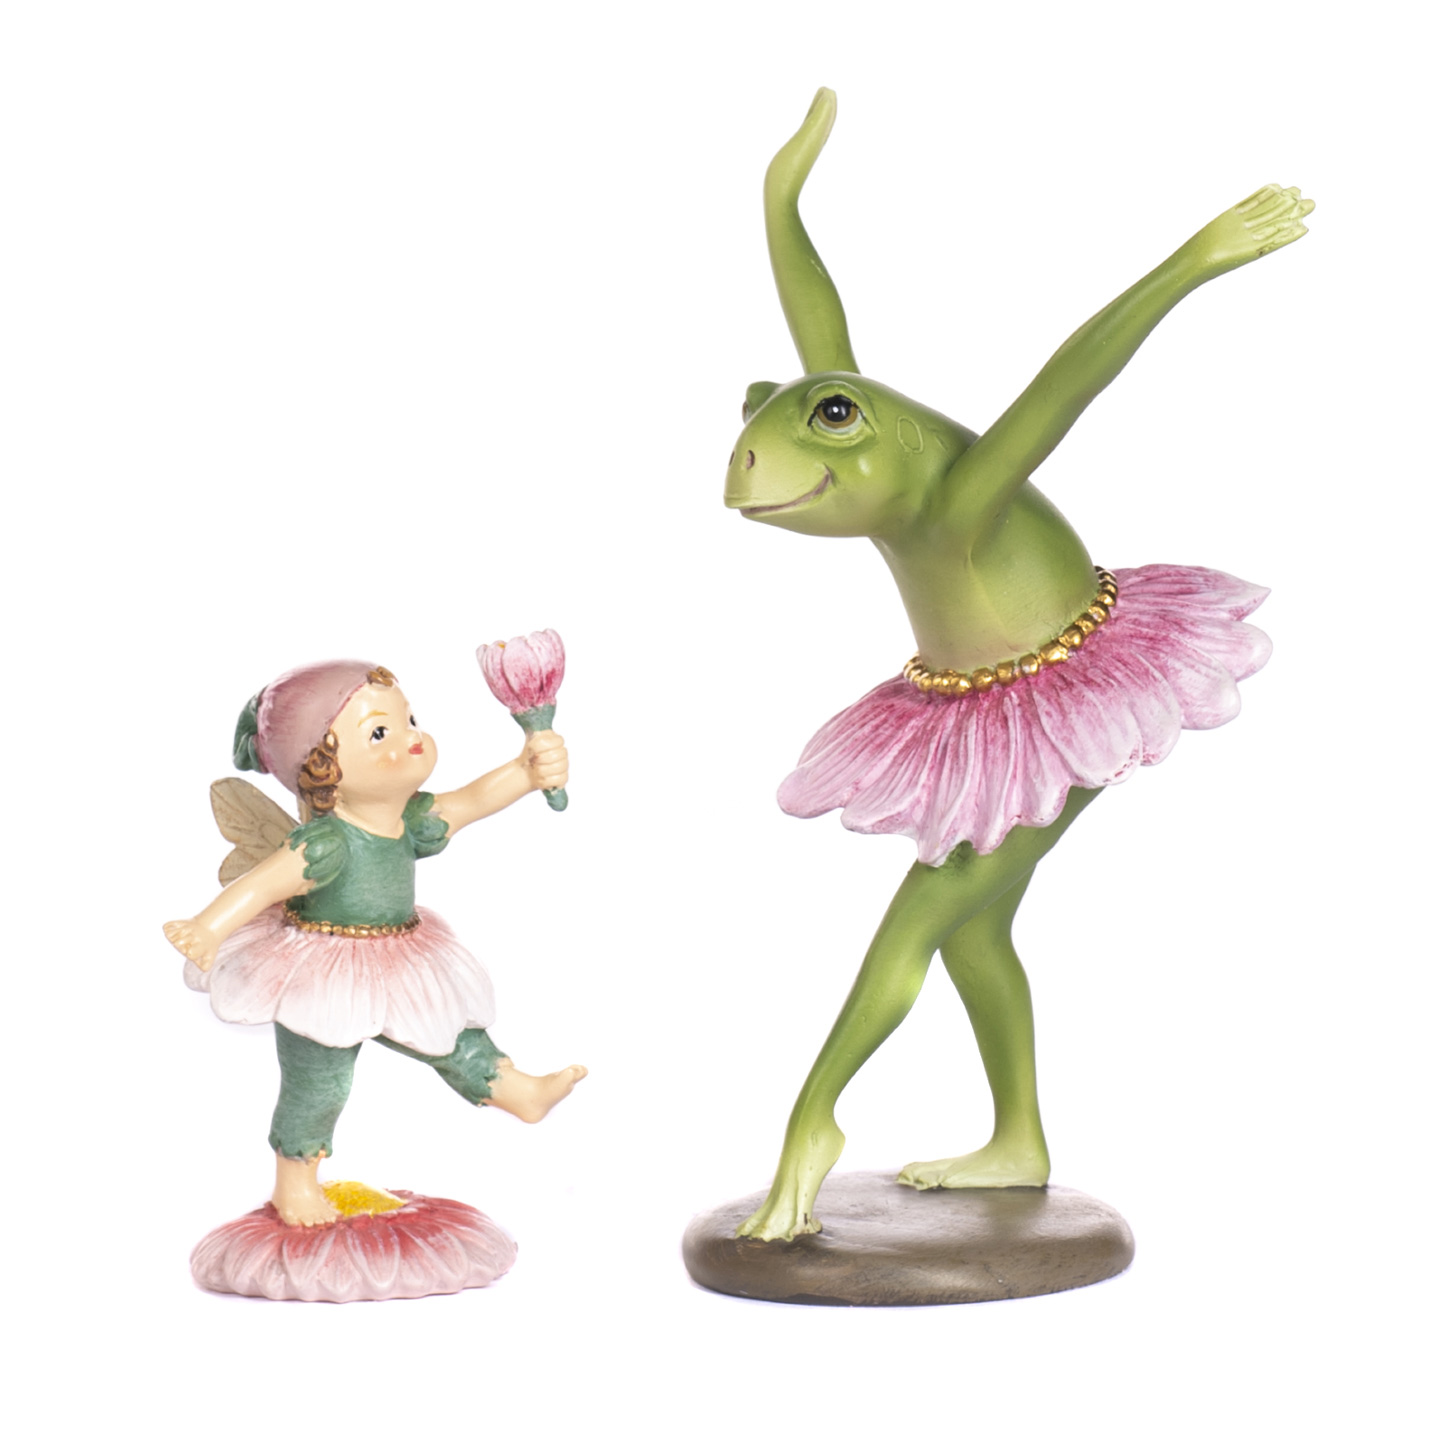 Frosch Ballerina und kleine Blumenelfe im 2er Set, FROG/FAIRY BALLERINA SET von  Catherine Collection / Goodwill  